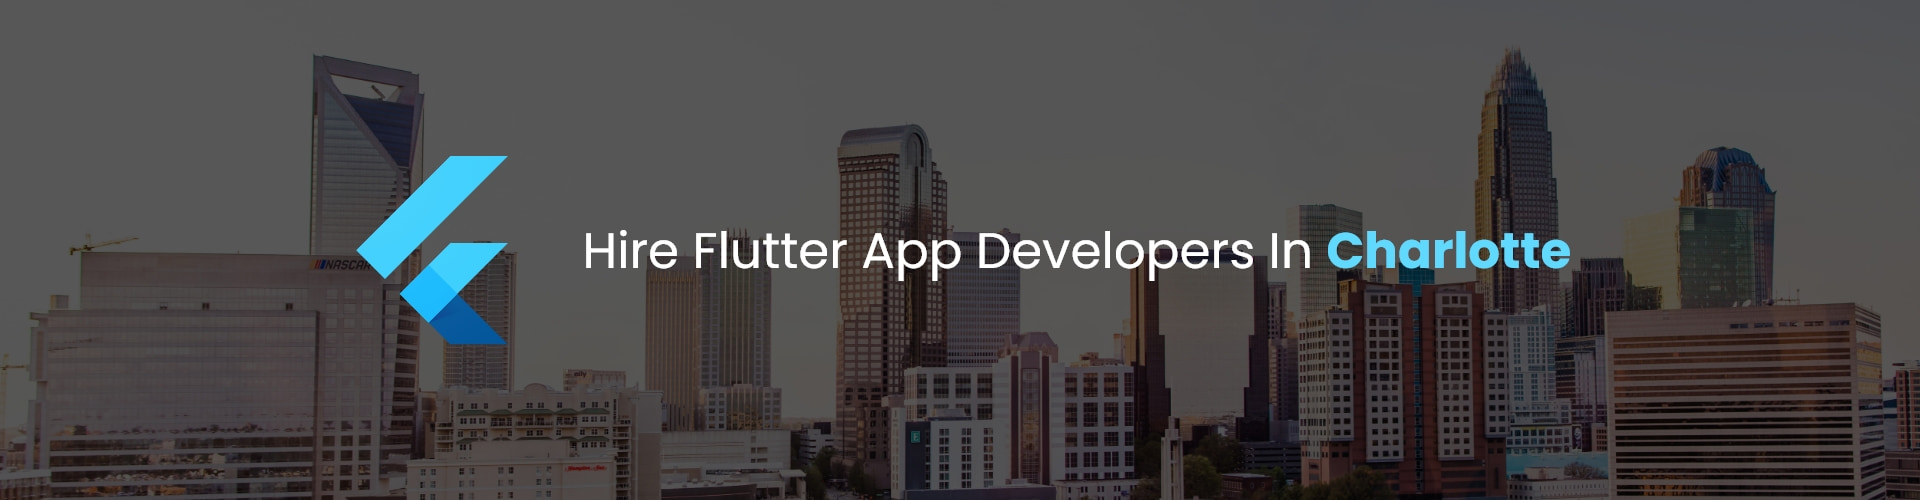 hire flutter app developers in charlotte